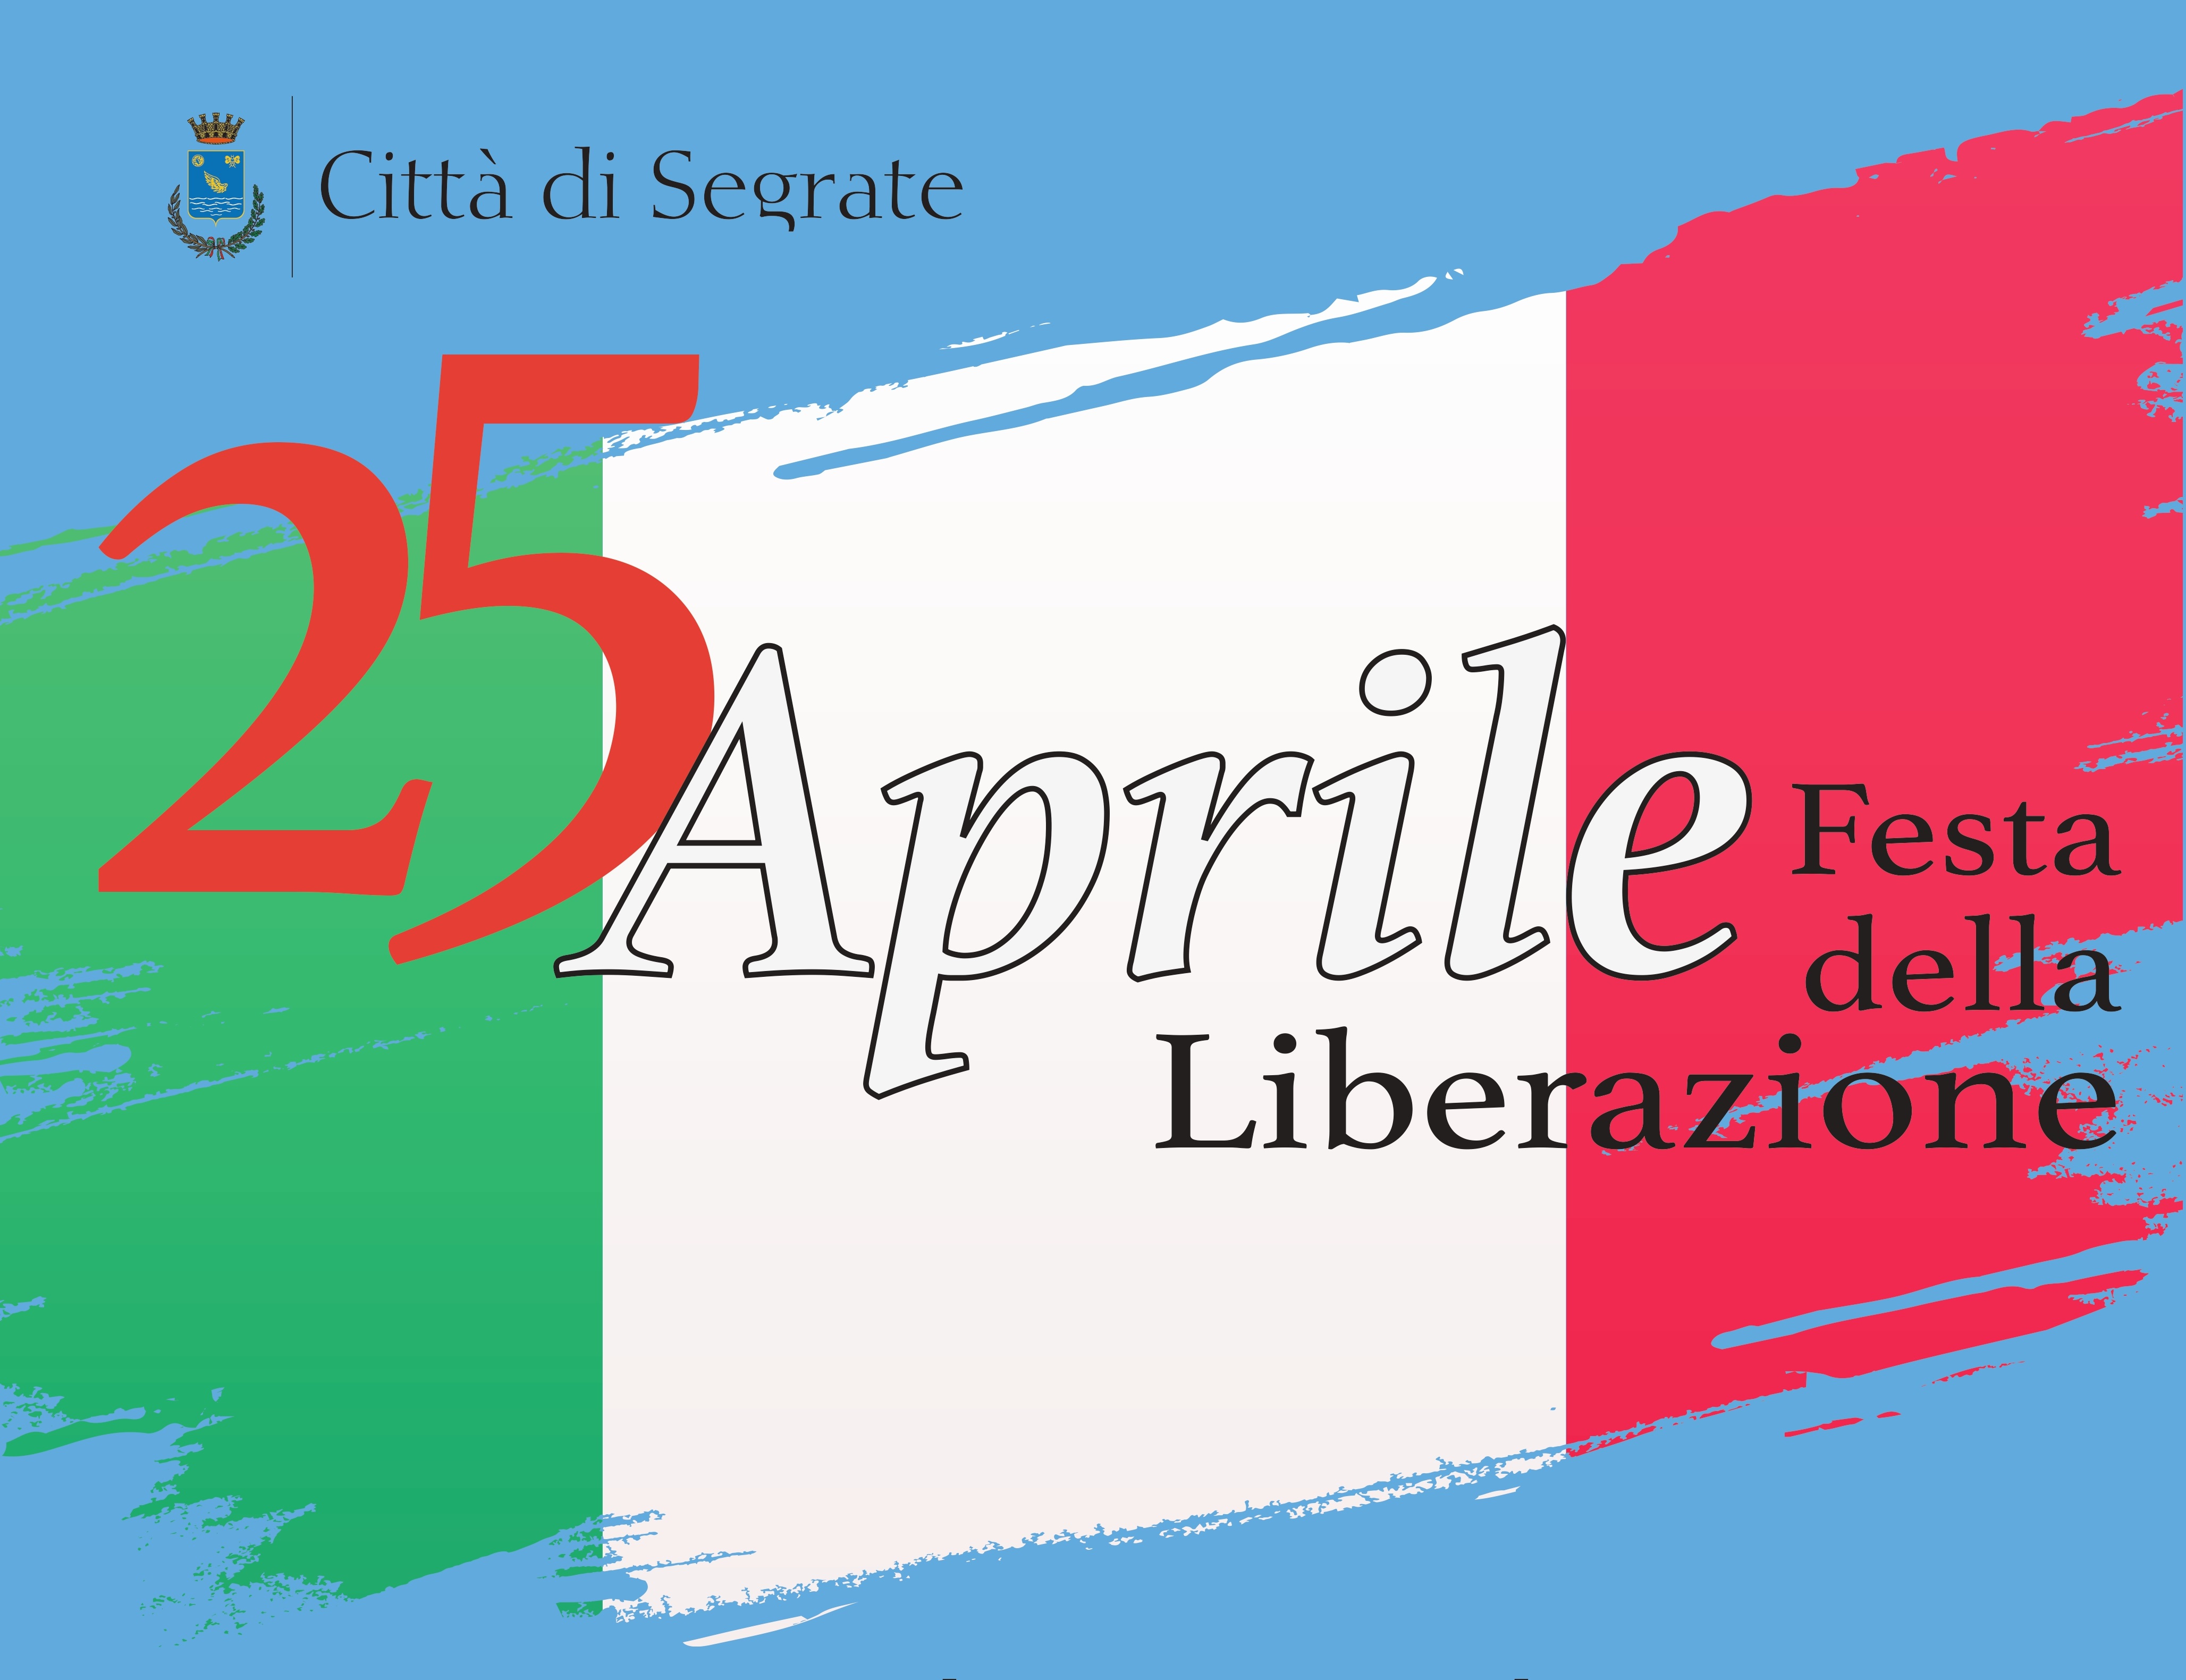 Il 25 Aprile festeggiamo la Liberazione!